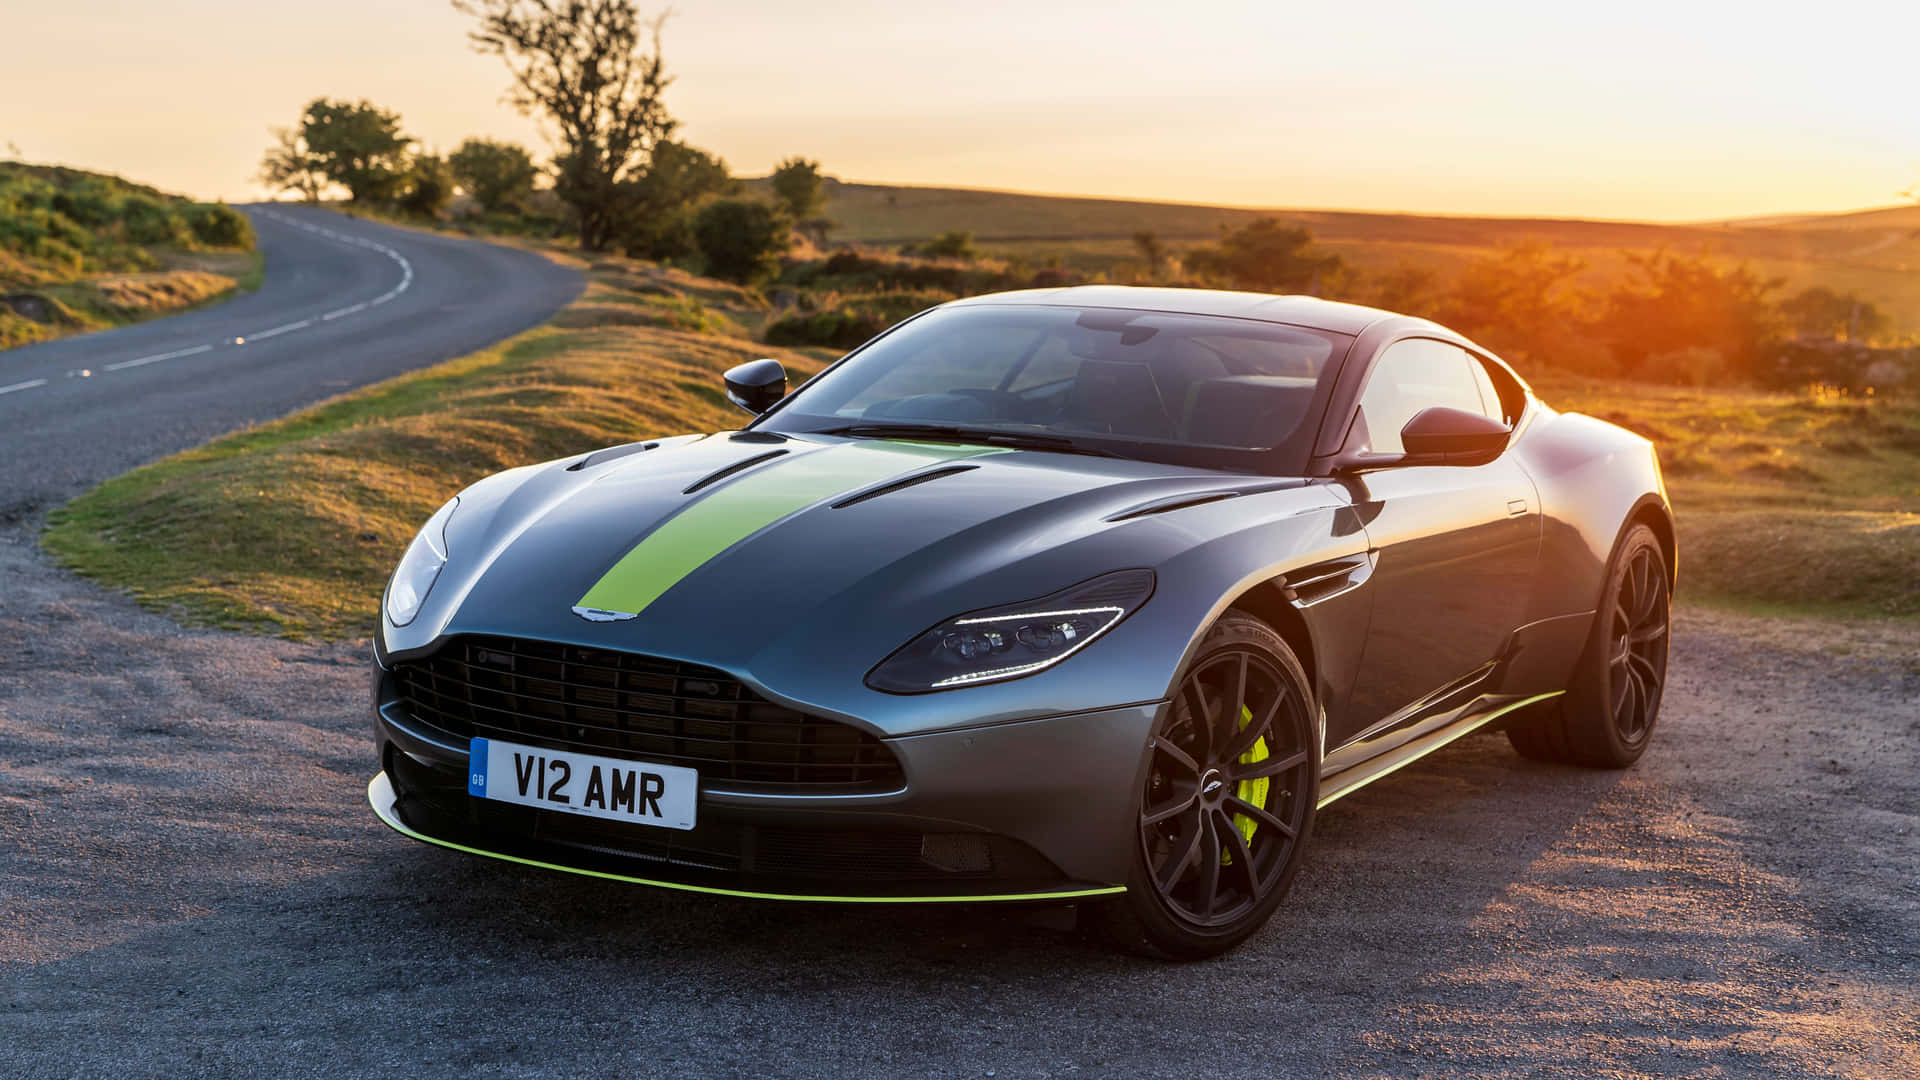 Fondode Pantalla: Aston Martin Db11 Acelerando Con Estilo. Fondo de pantalla